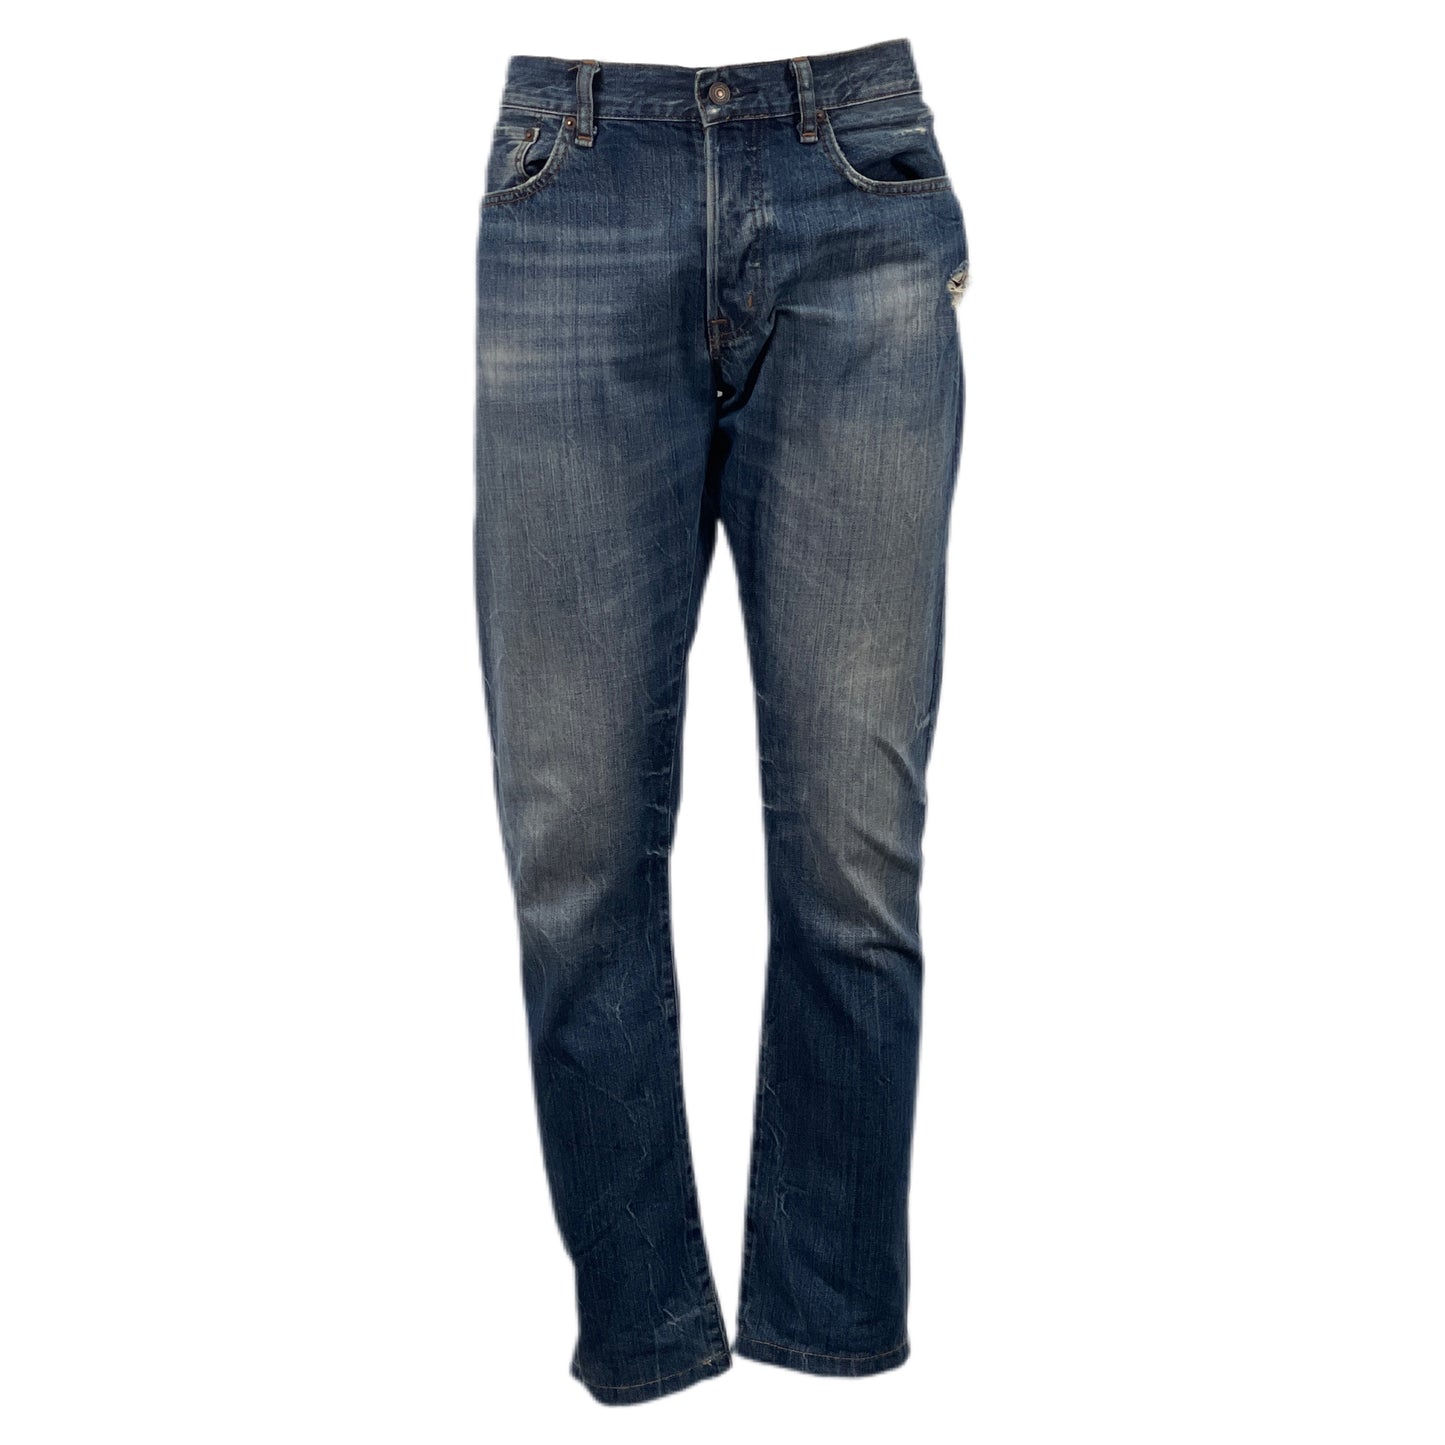 Pantalone jeans Polo Ralph Lauren - SIZE 32